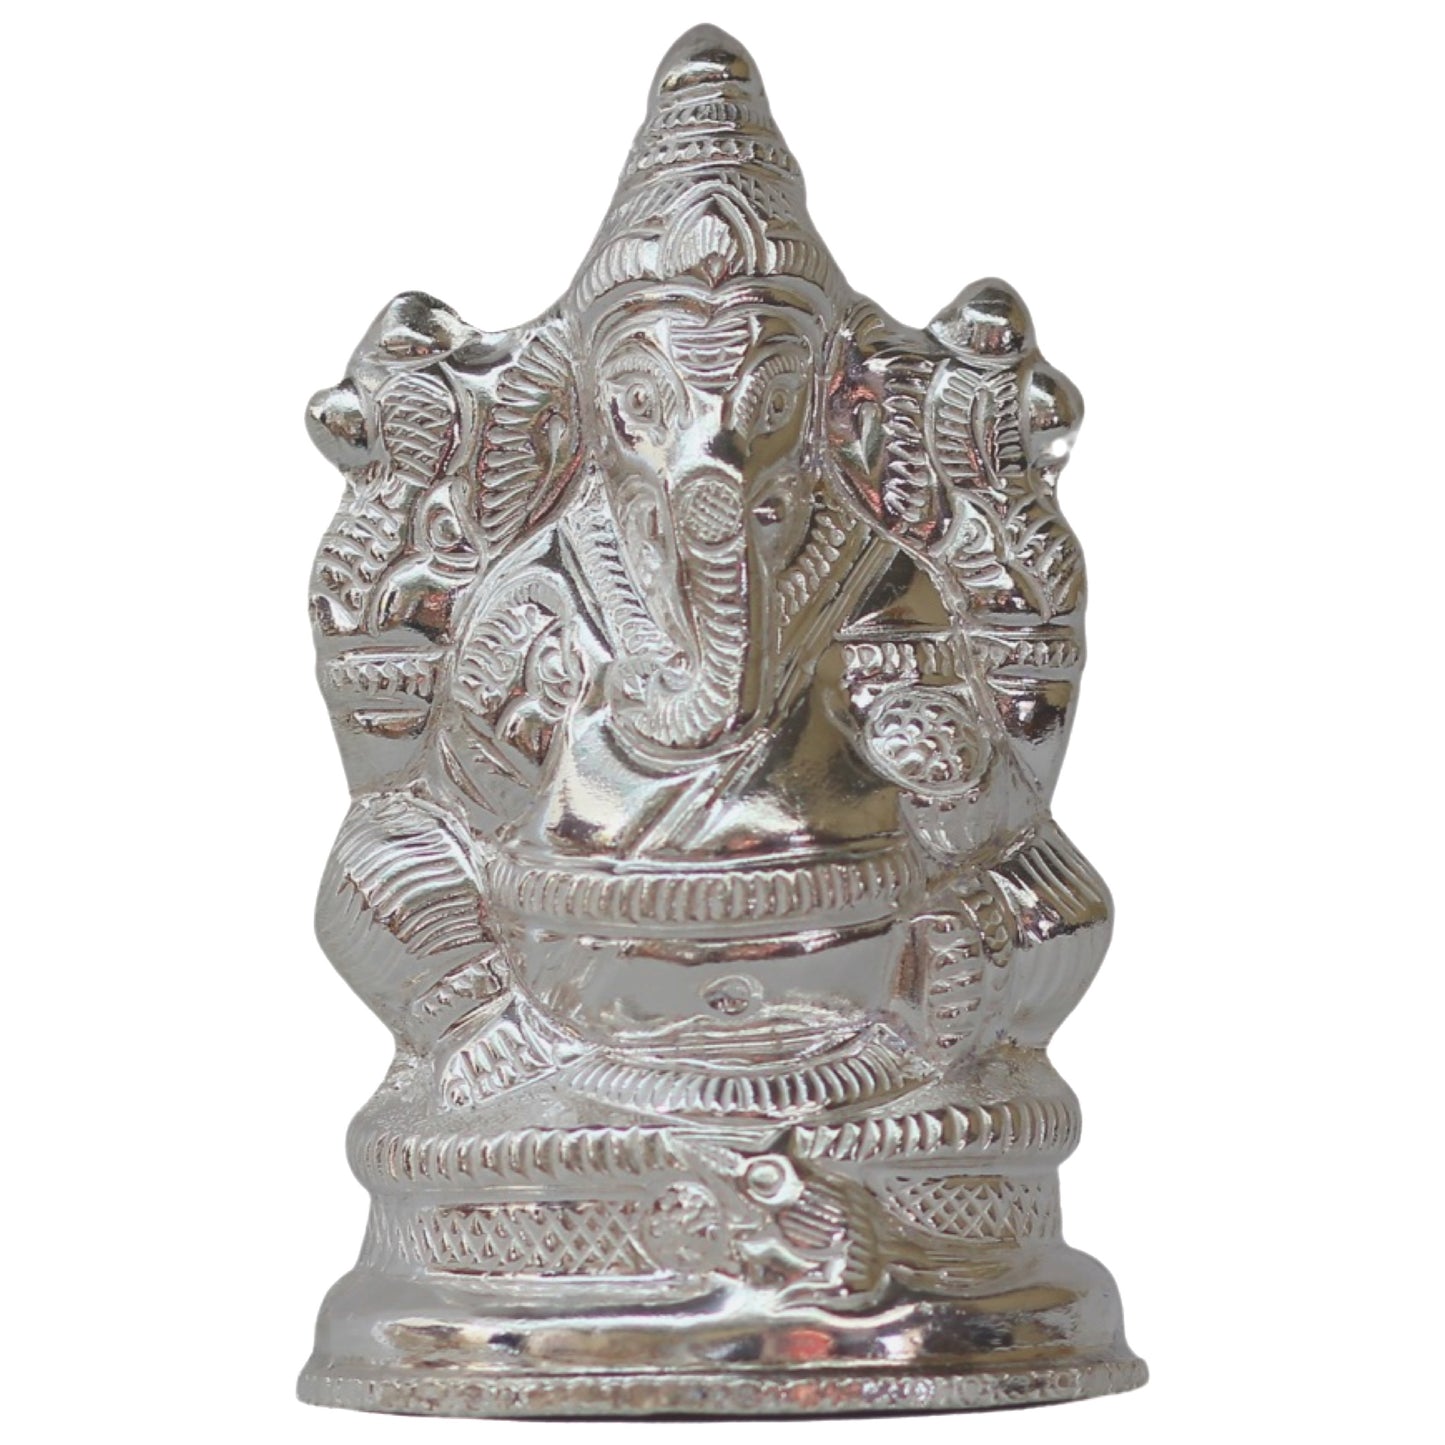 Silver ganesh idol, silver idols for worship